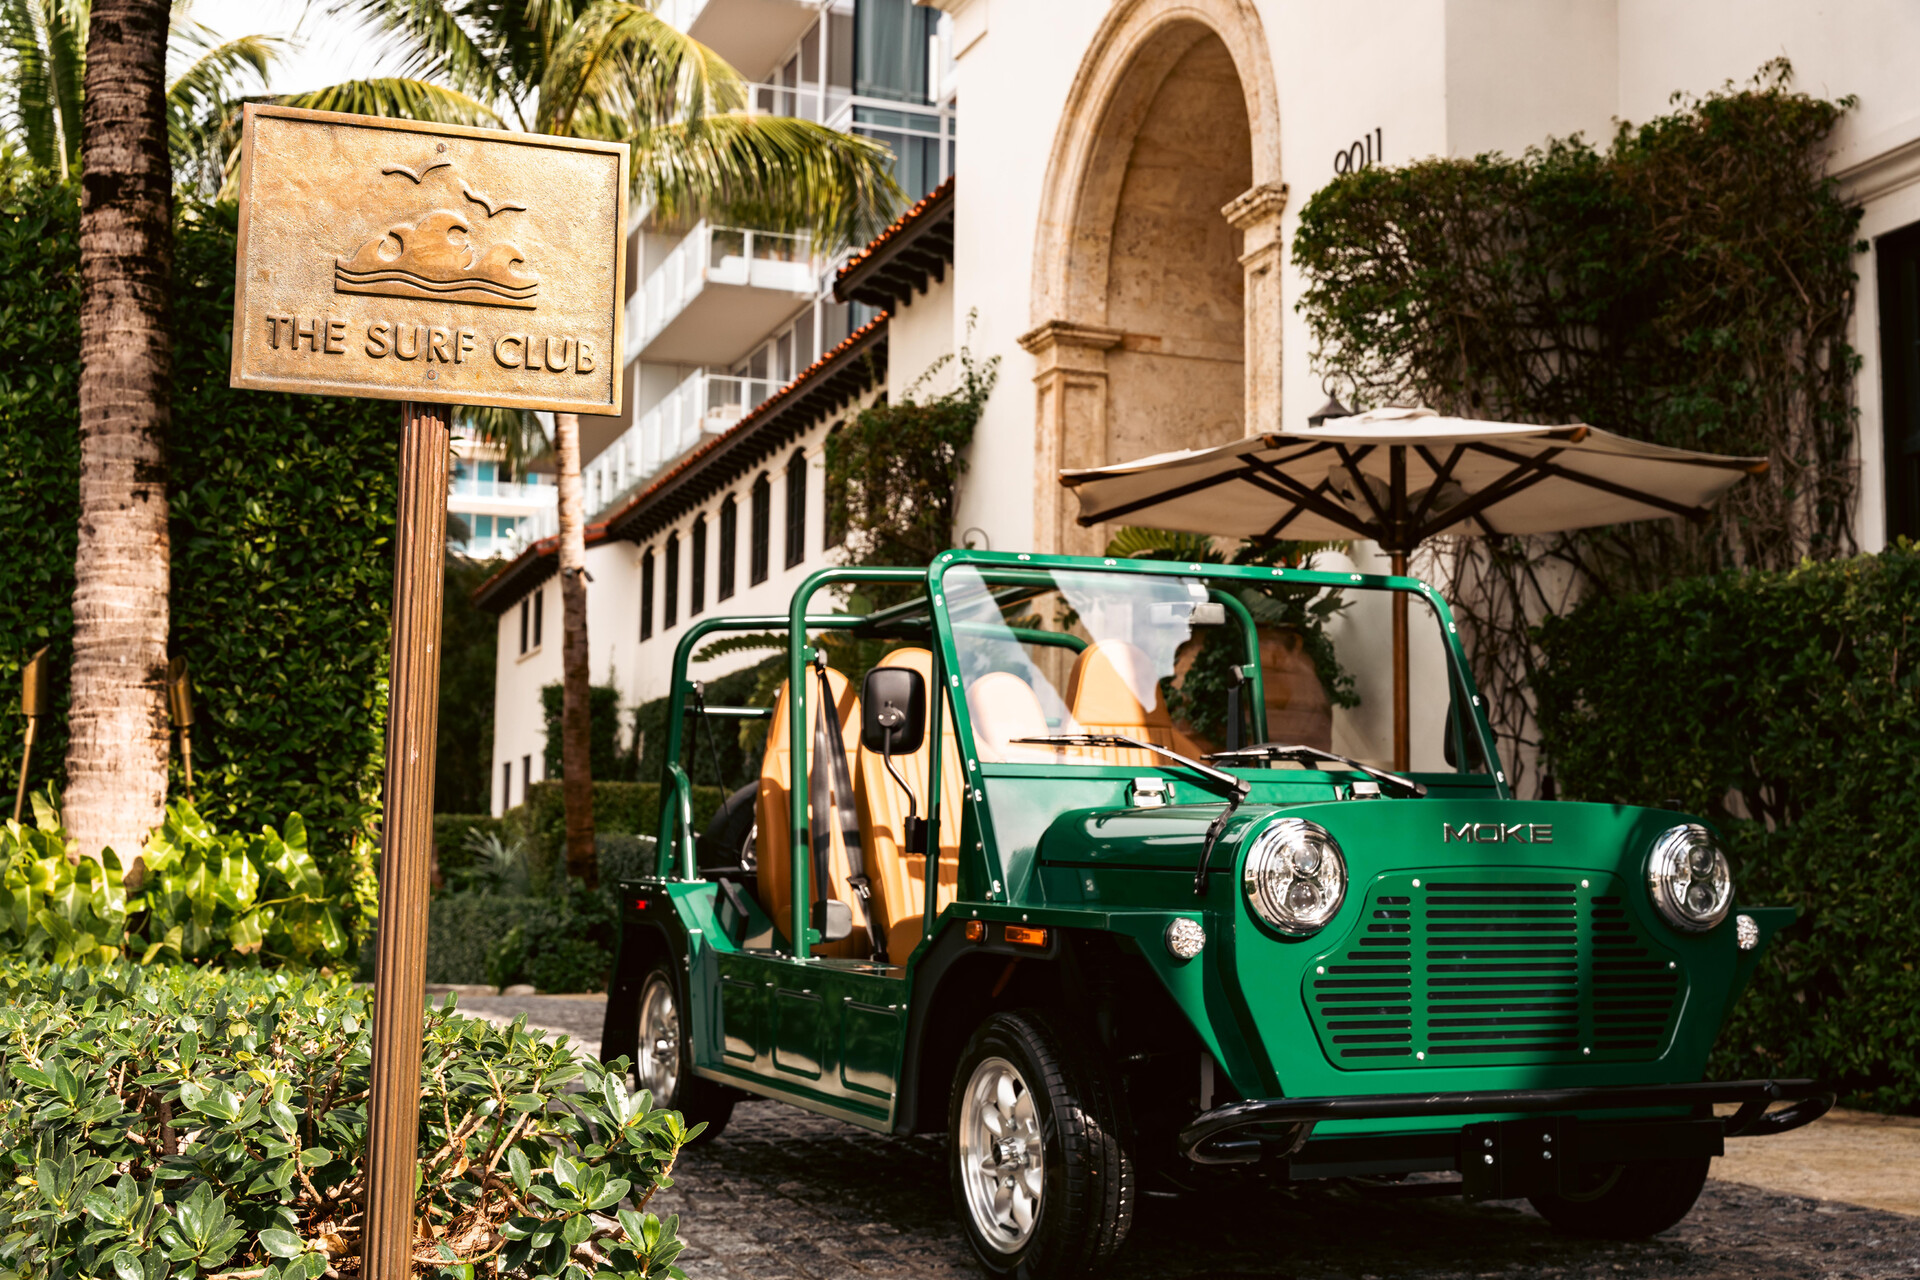 
Em Miami, o The Surf Club oferece luxo, gastronomia e vistas deslumbrantes do mar